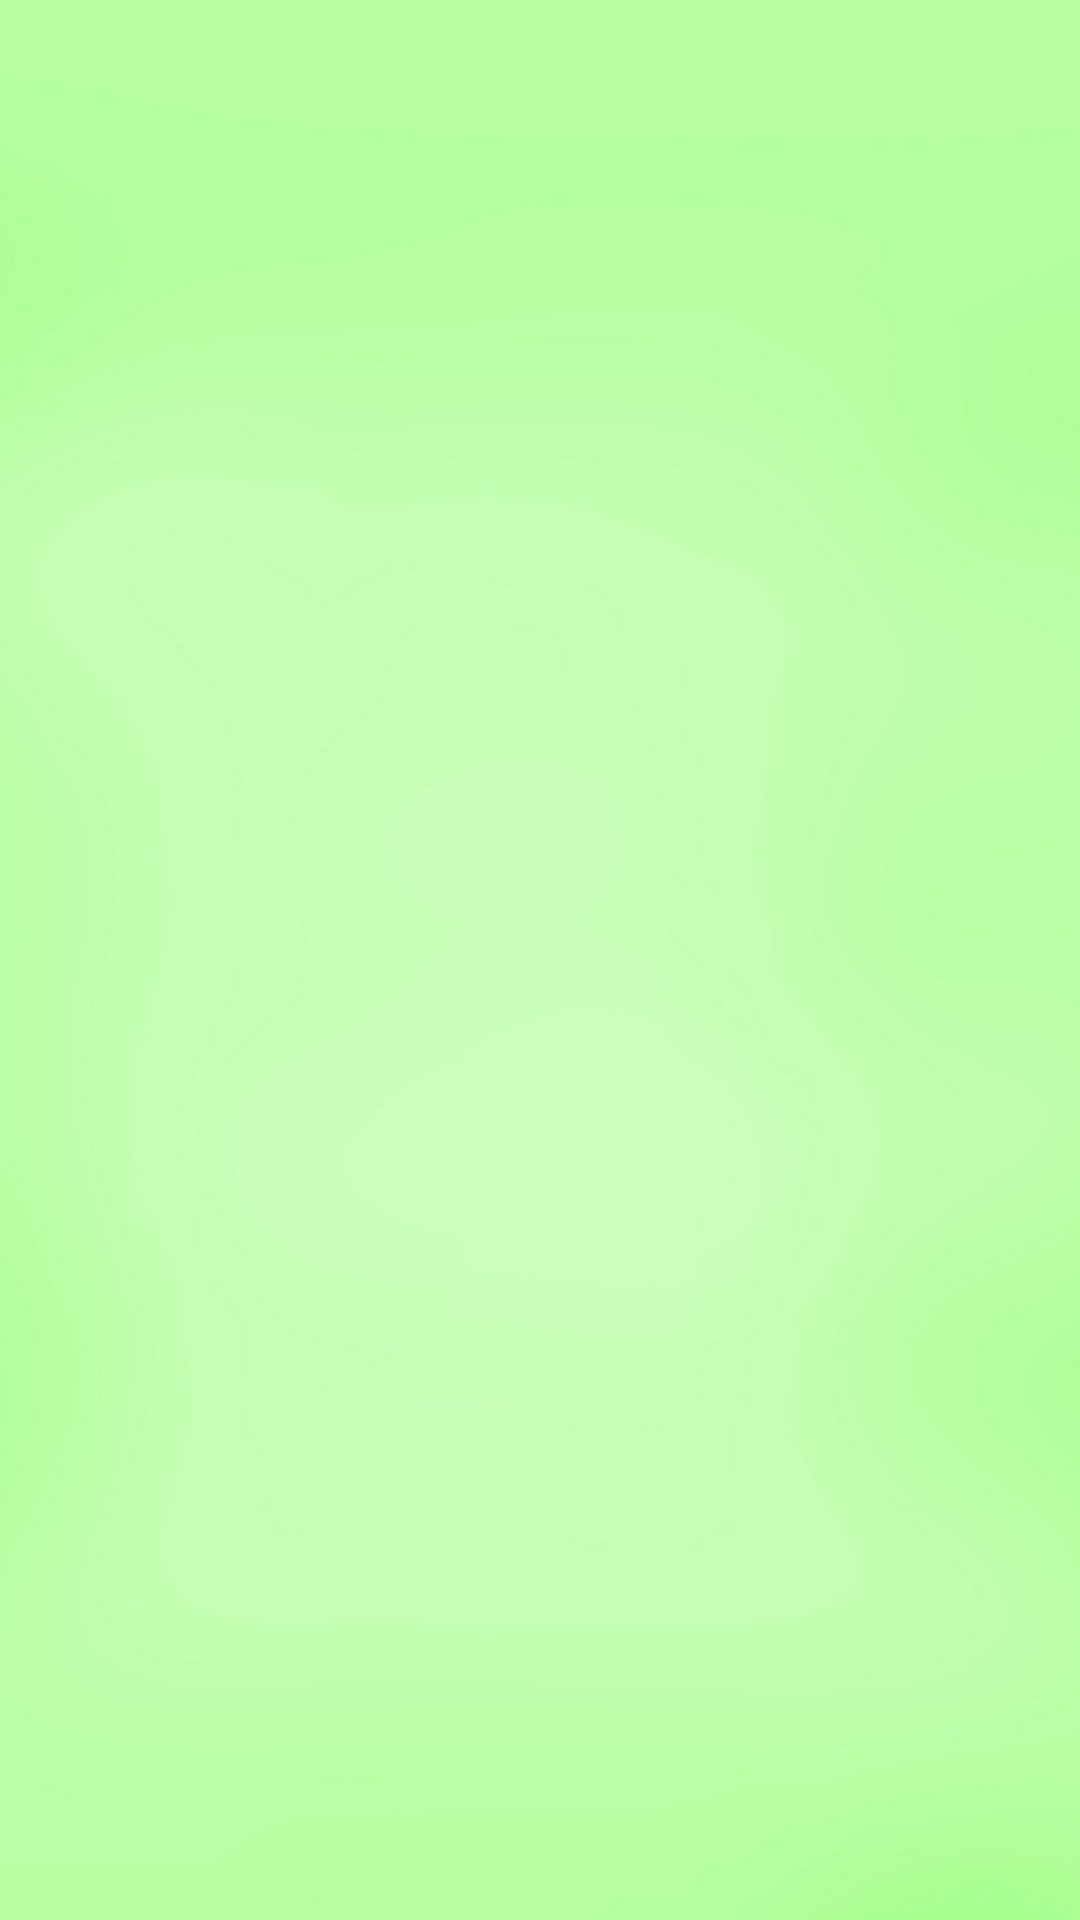 papier peint vert clair,vert,jaune,aqua,turquoise,herbe